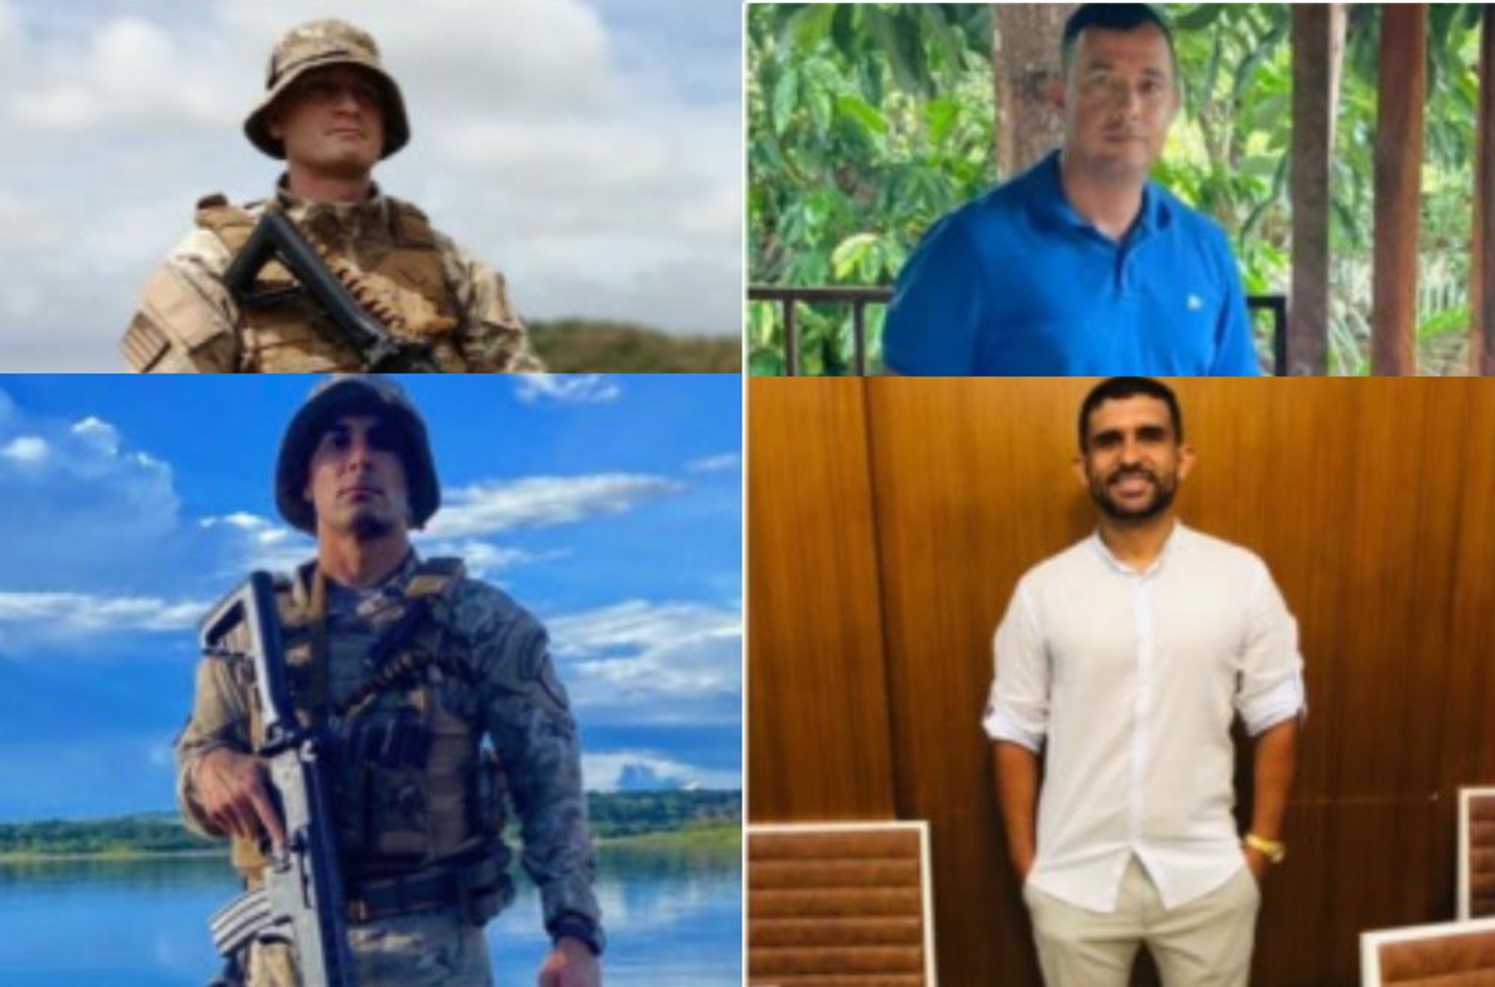 Policiais militares mortos em acidente serão velados na academia da PM, em Goiânia Homenagens devem reunir familiares amigos